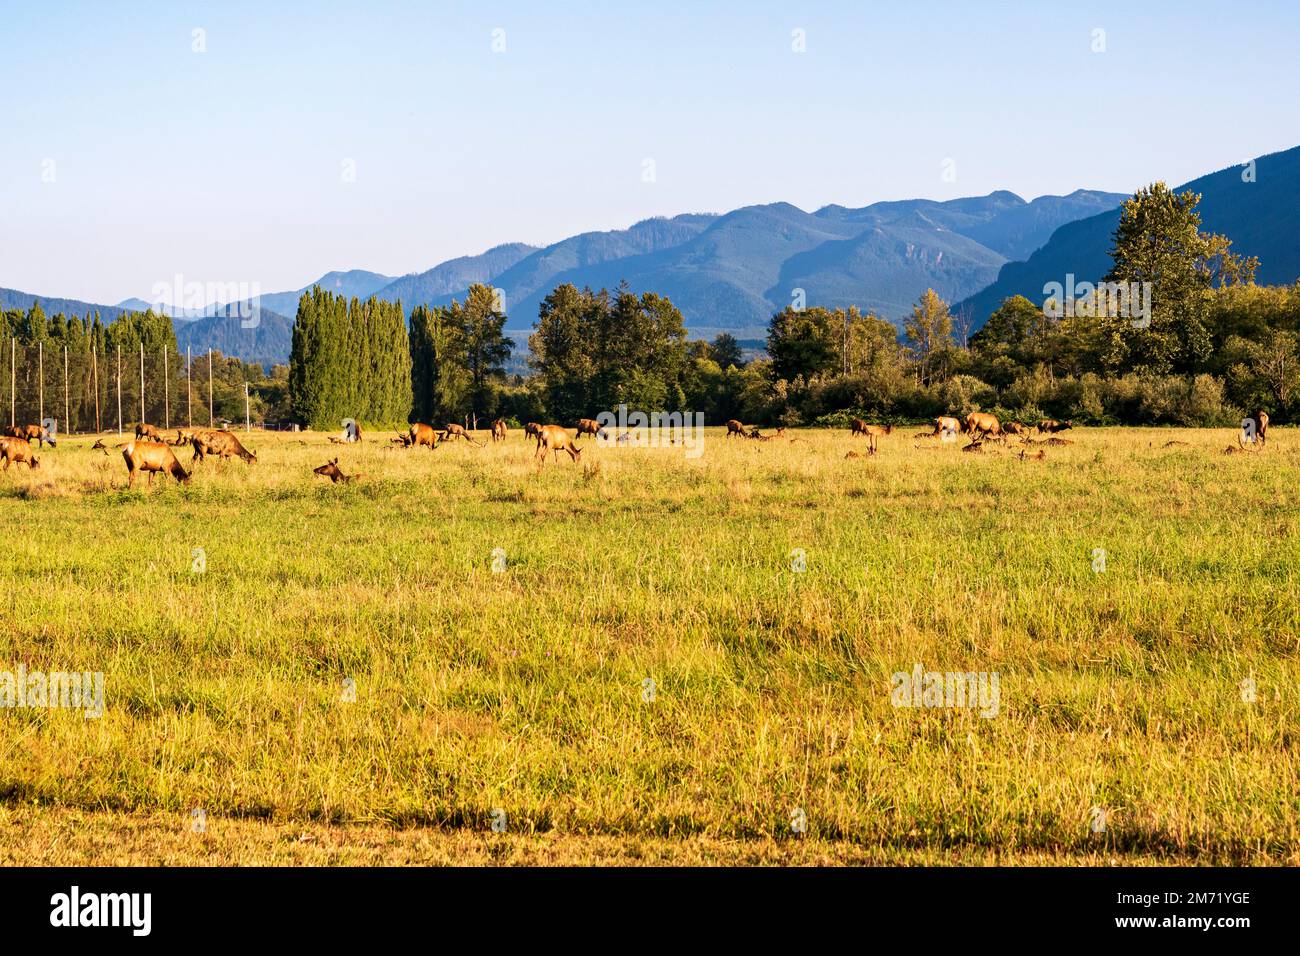 Eine Herde wilder Wapitis grast auf einem grasbedeckten Feld in North Bend, Washington, USA. Stockfoto